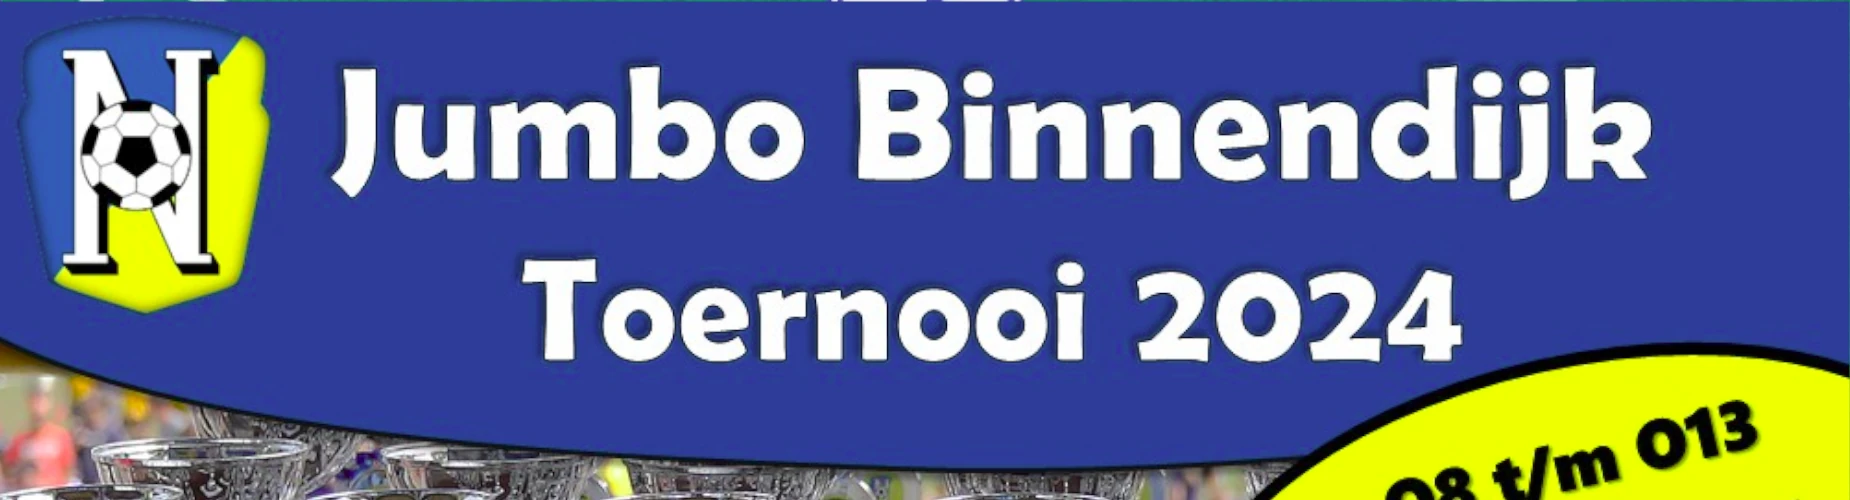 Banner - O10 - Jumbo Binnendijk Toernooi 2024 - vv Nunspeet - Nunspeet